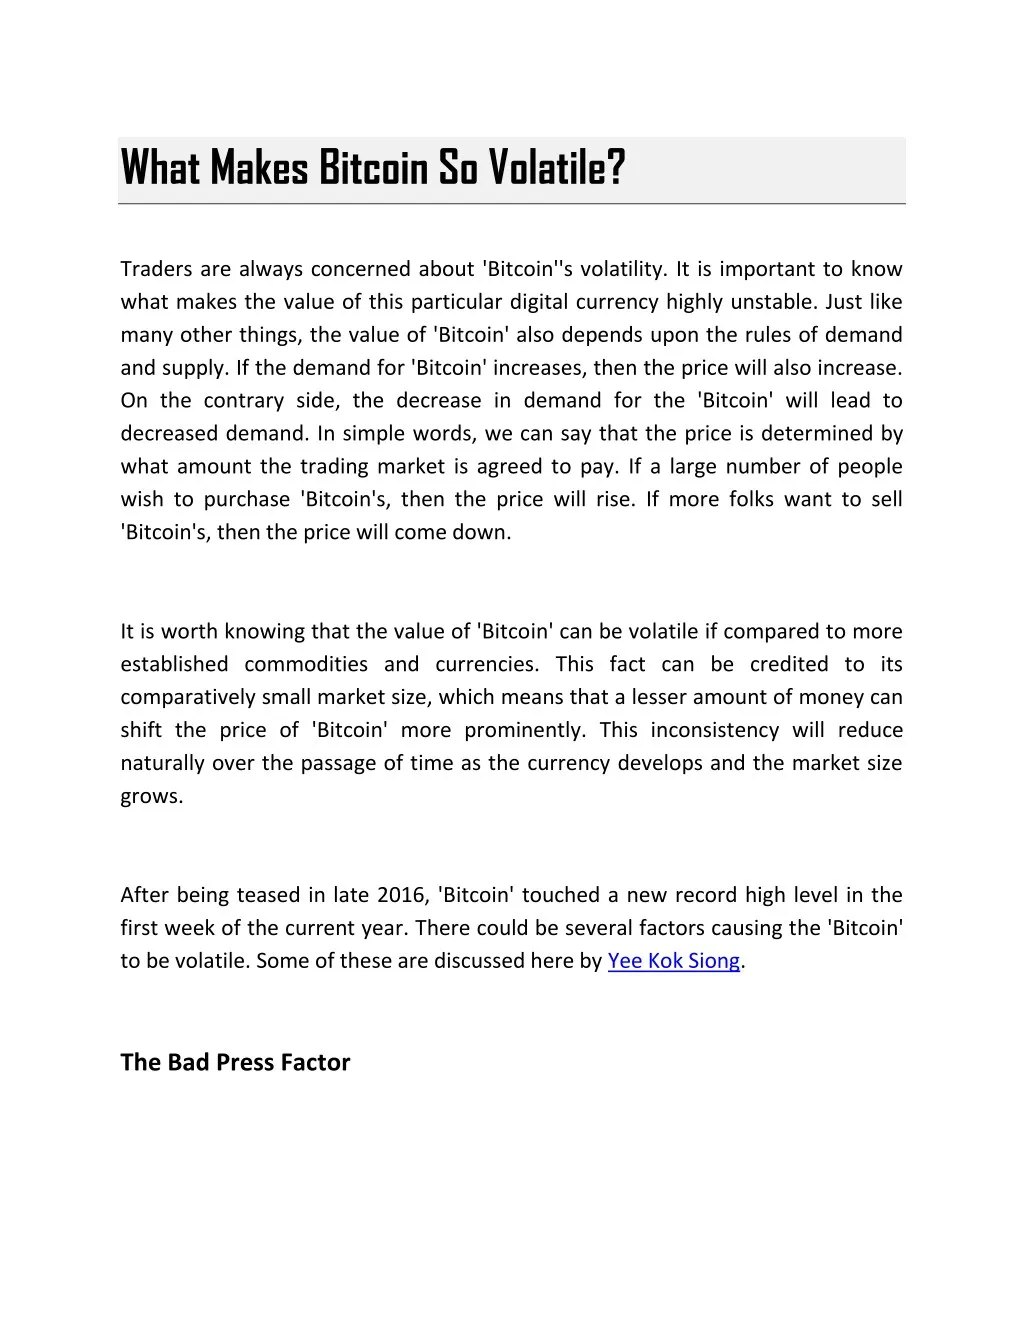 what makes bitcoin so volatile